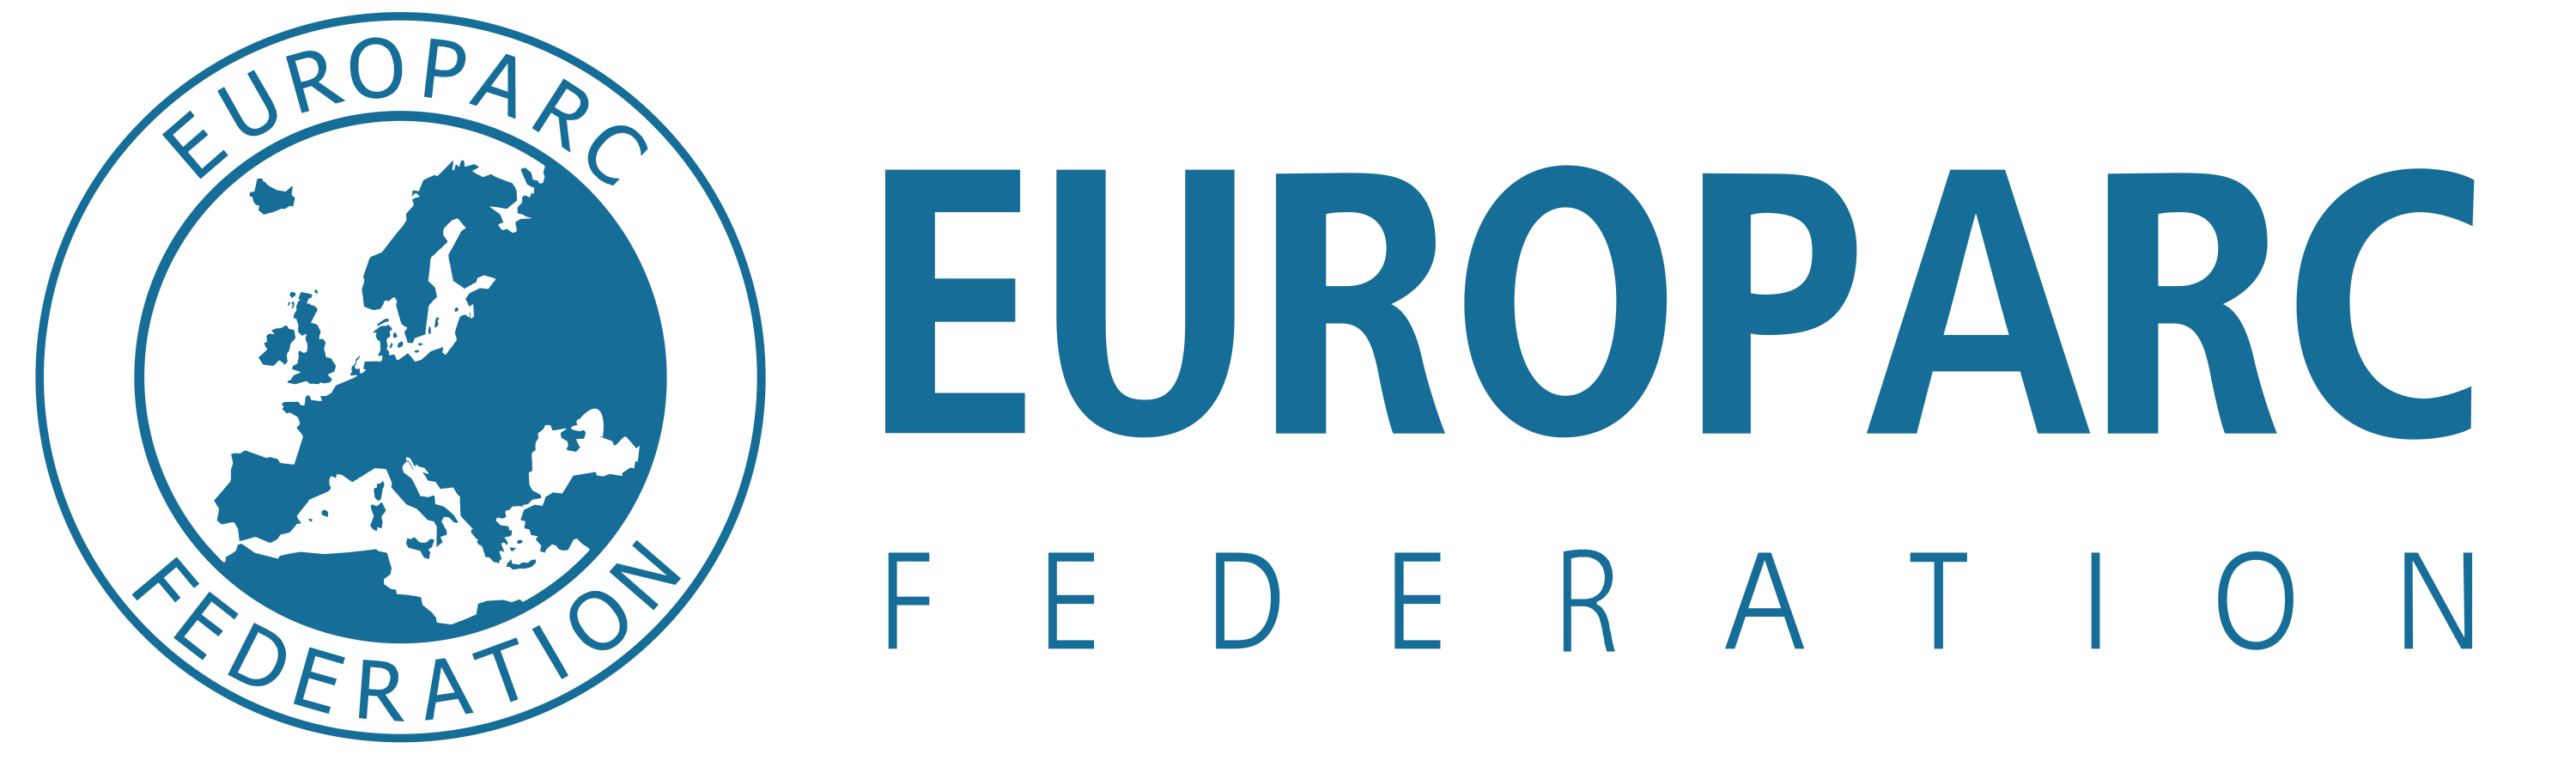 Logo.Foderation EUROPARC e.V..png